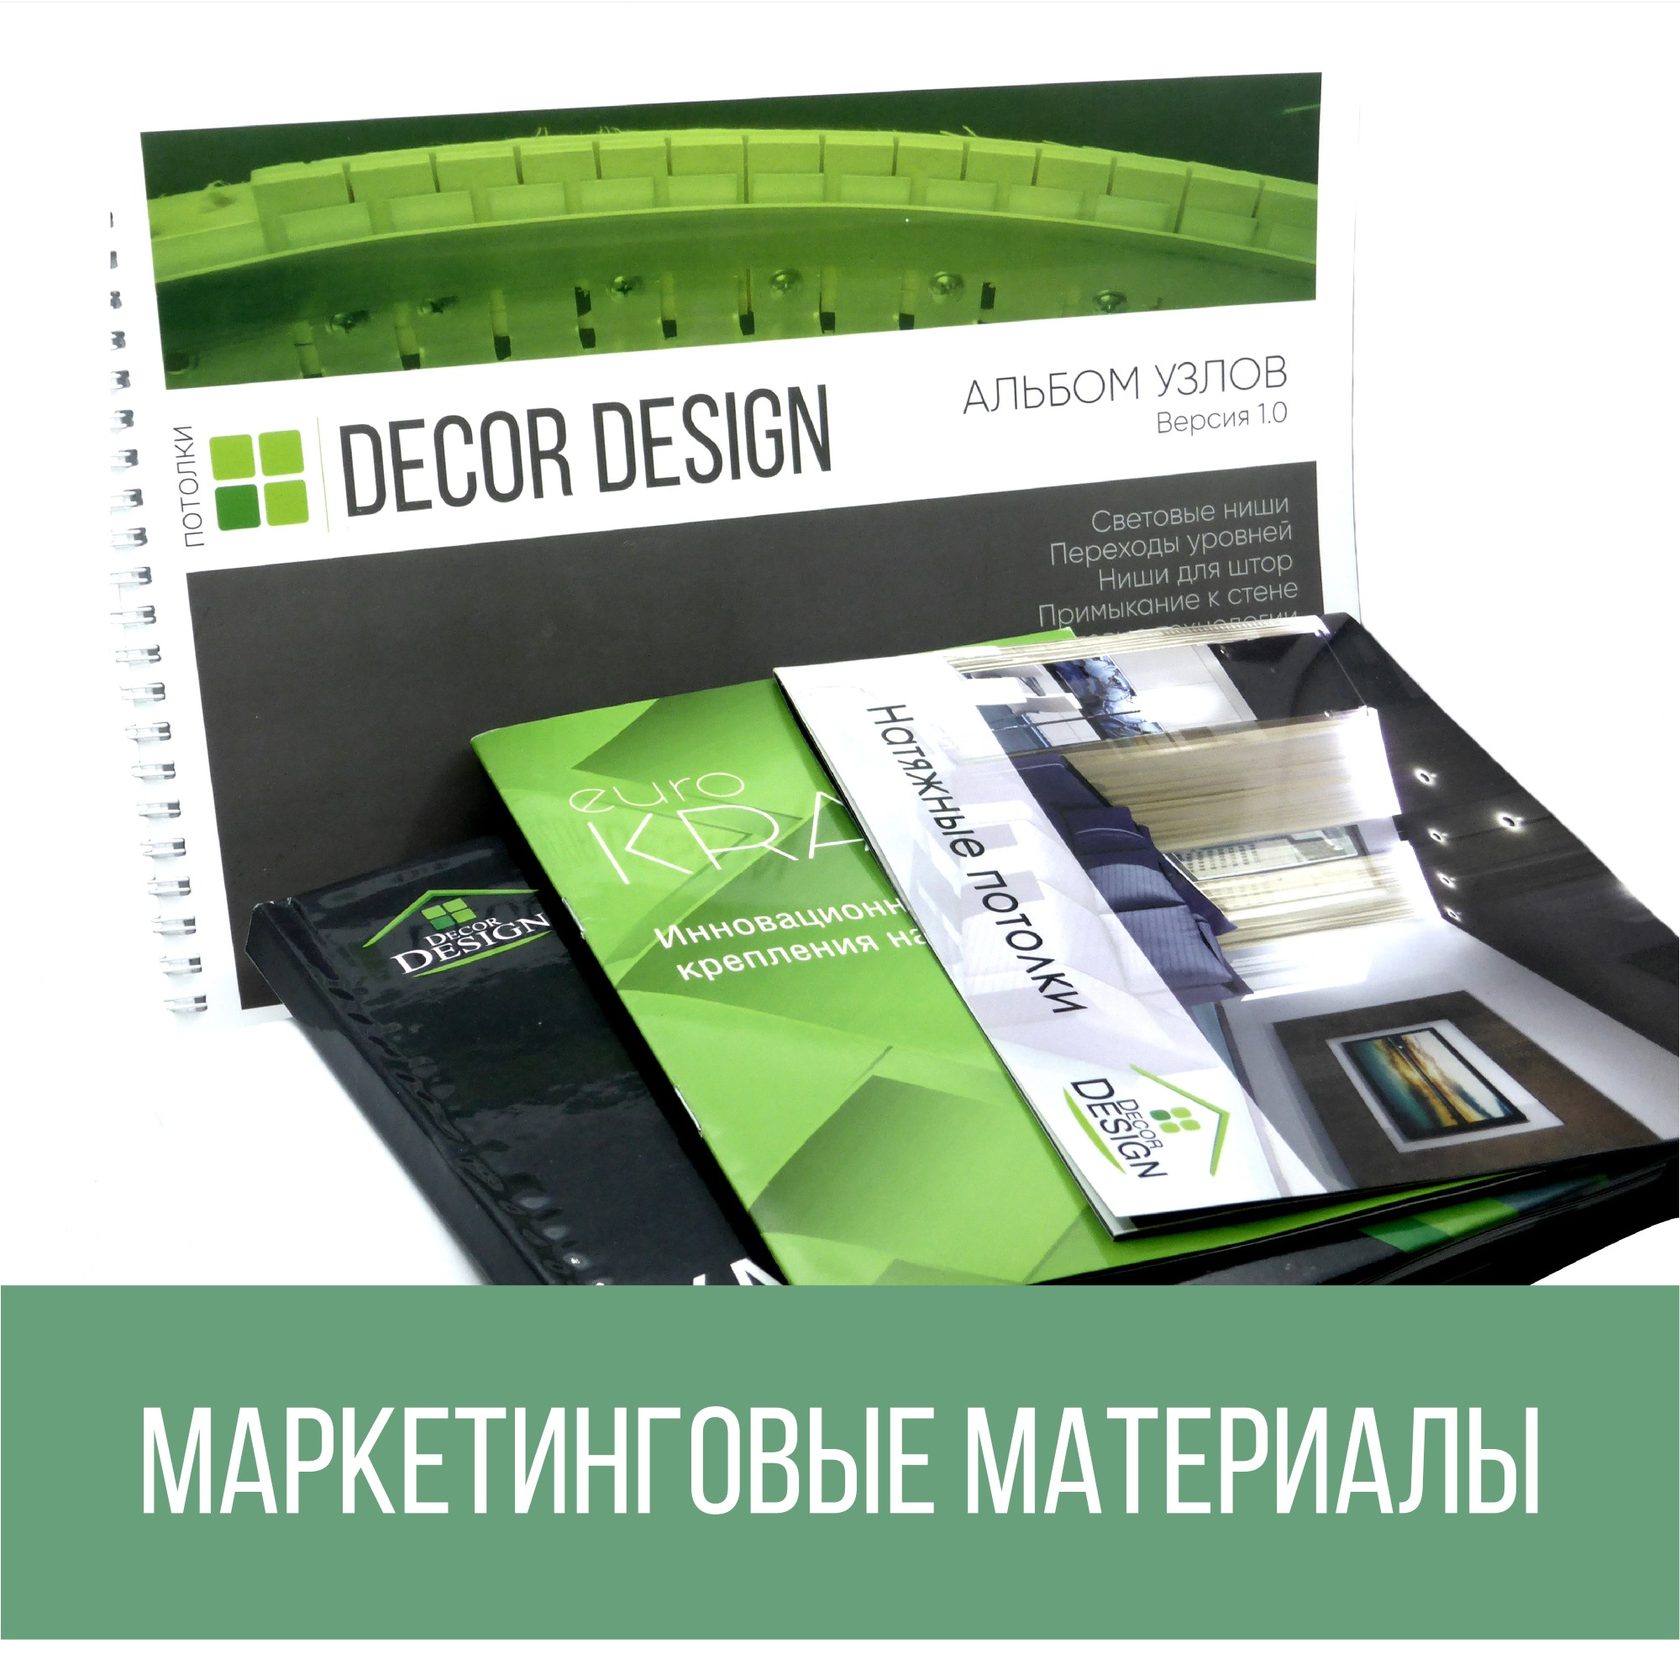 Маркетинговые материалы для натяжных потолков от Decor Design